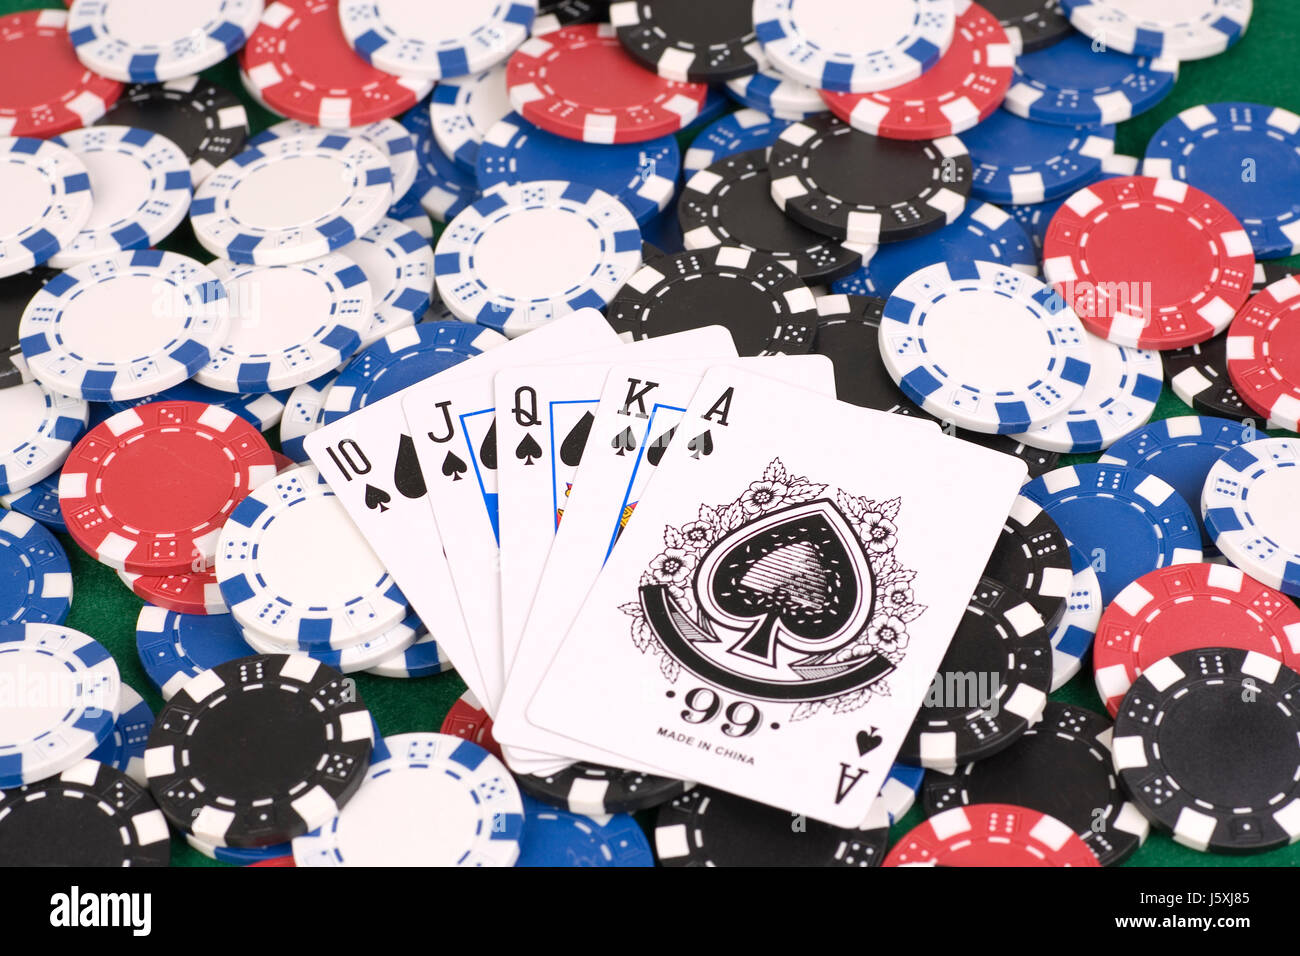 Poker - quinte flush royale - spades Banque D'Images